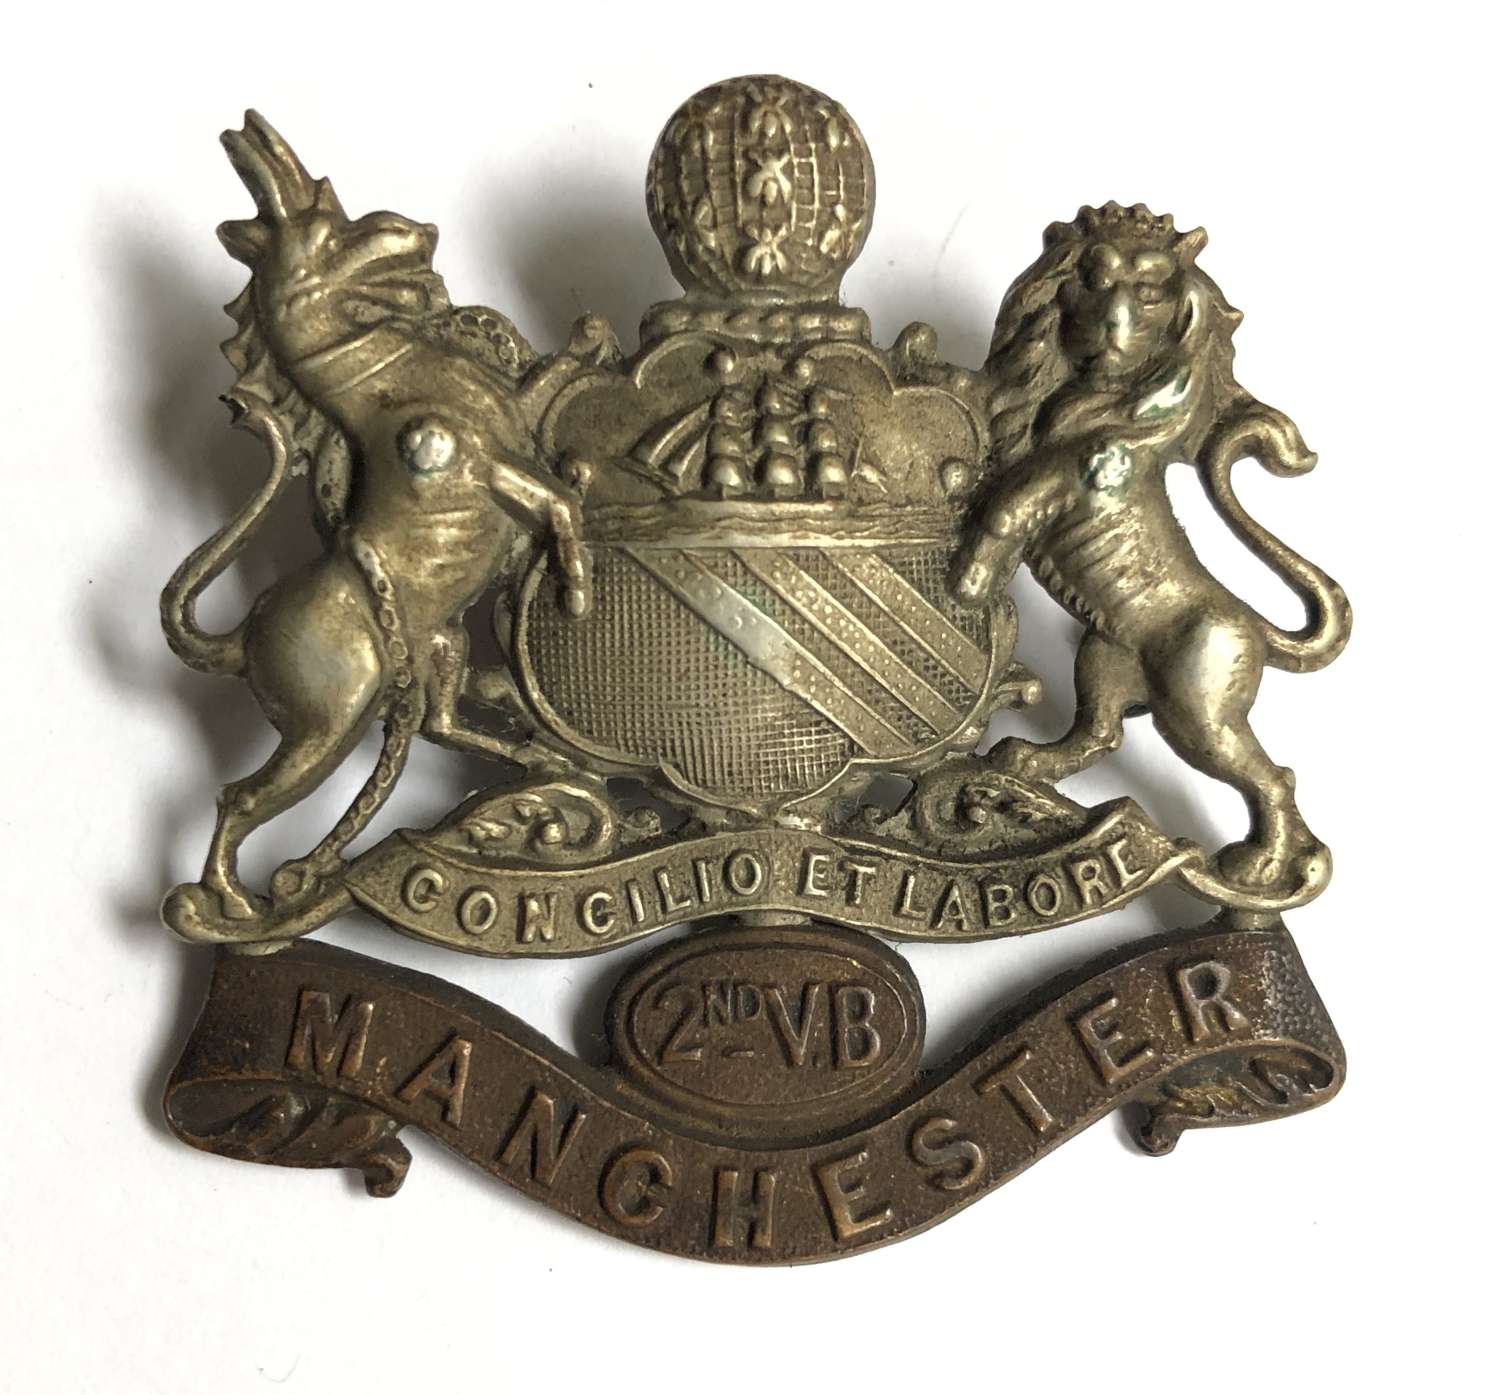 2nd VB Manchester Regiment cap badge circa 1896-1908.